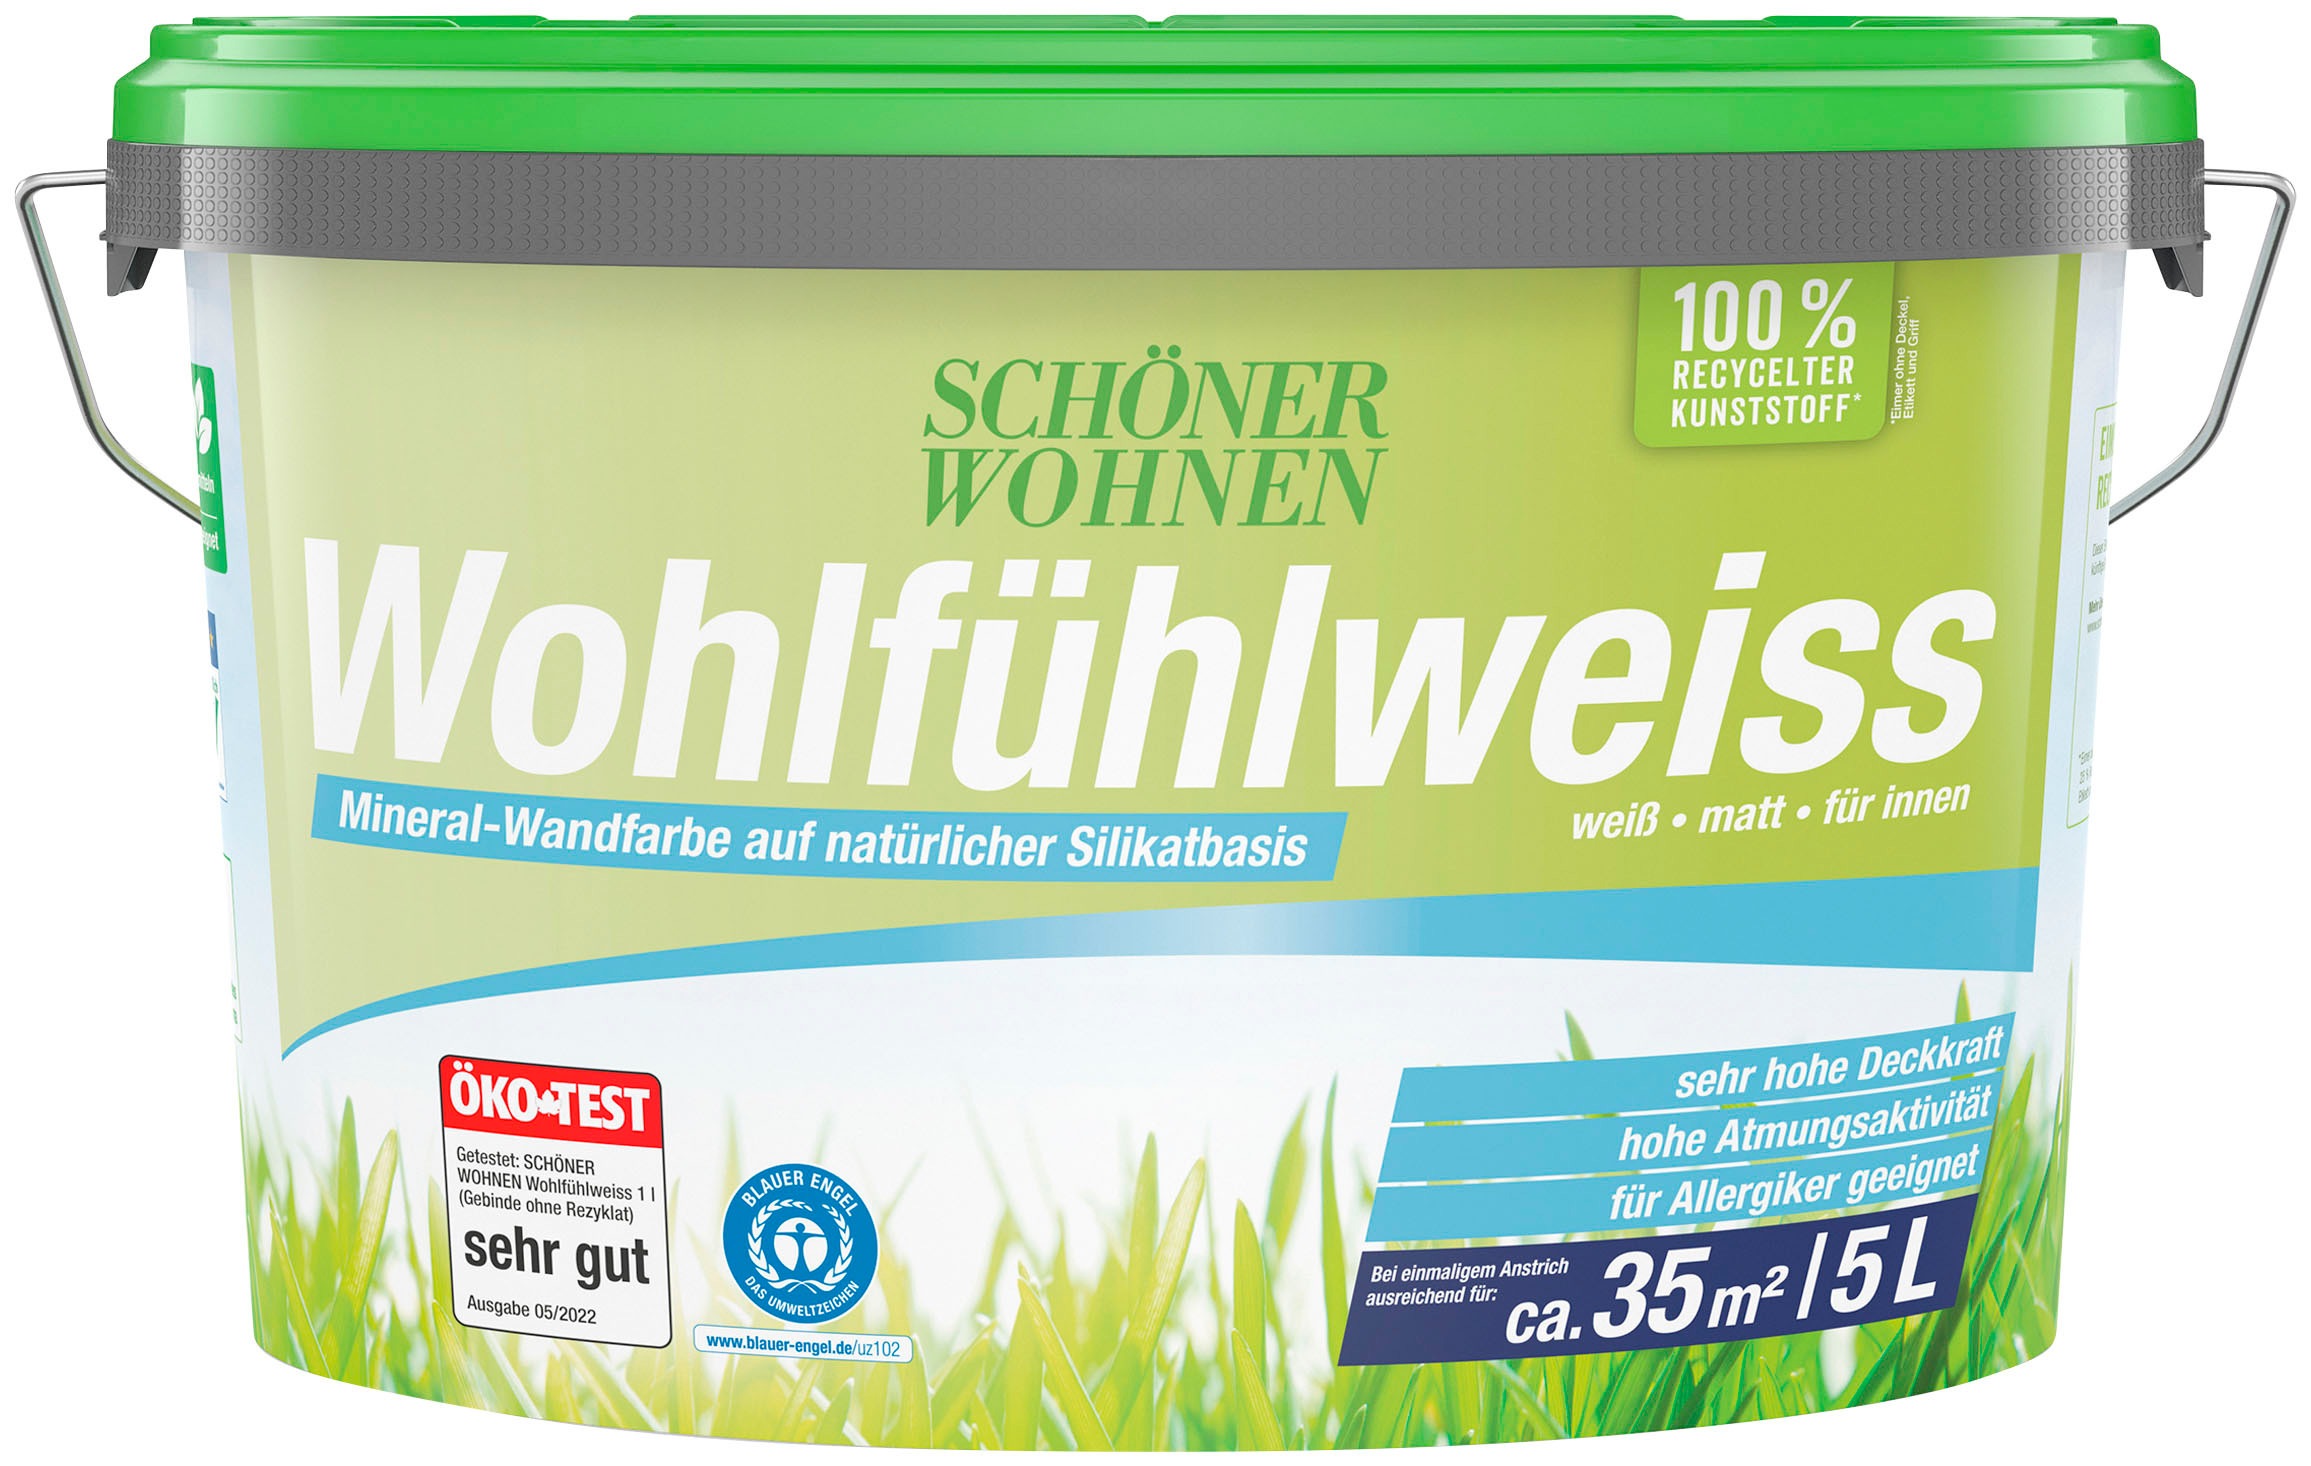 SCHÖNER WOHNEN FARBE Wandfarbe "Wohlfühlweiss", 5 Liter, weiß, Mineral-Wandfarbe - allergikergeeignet